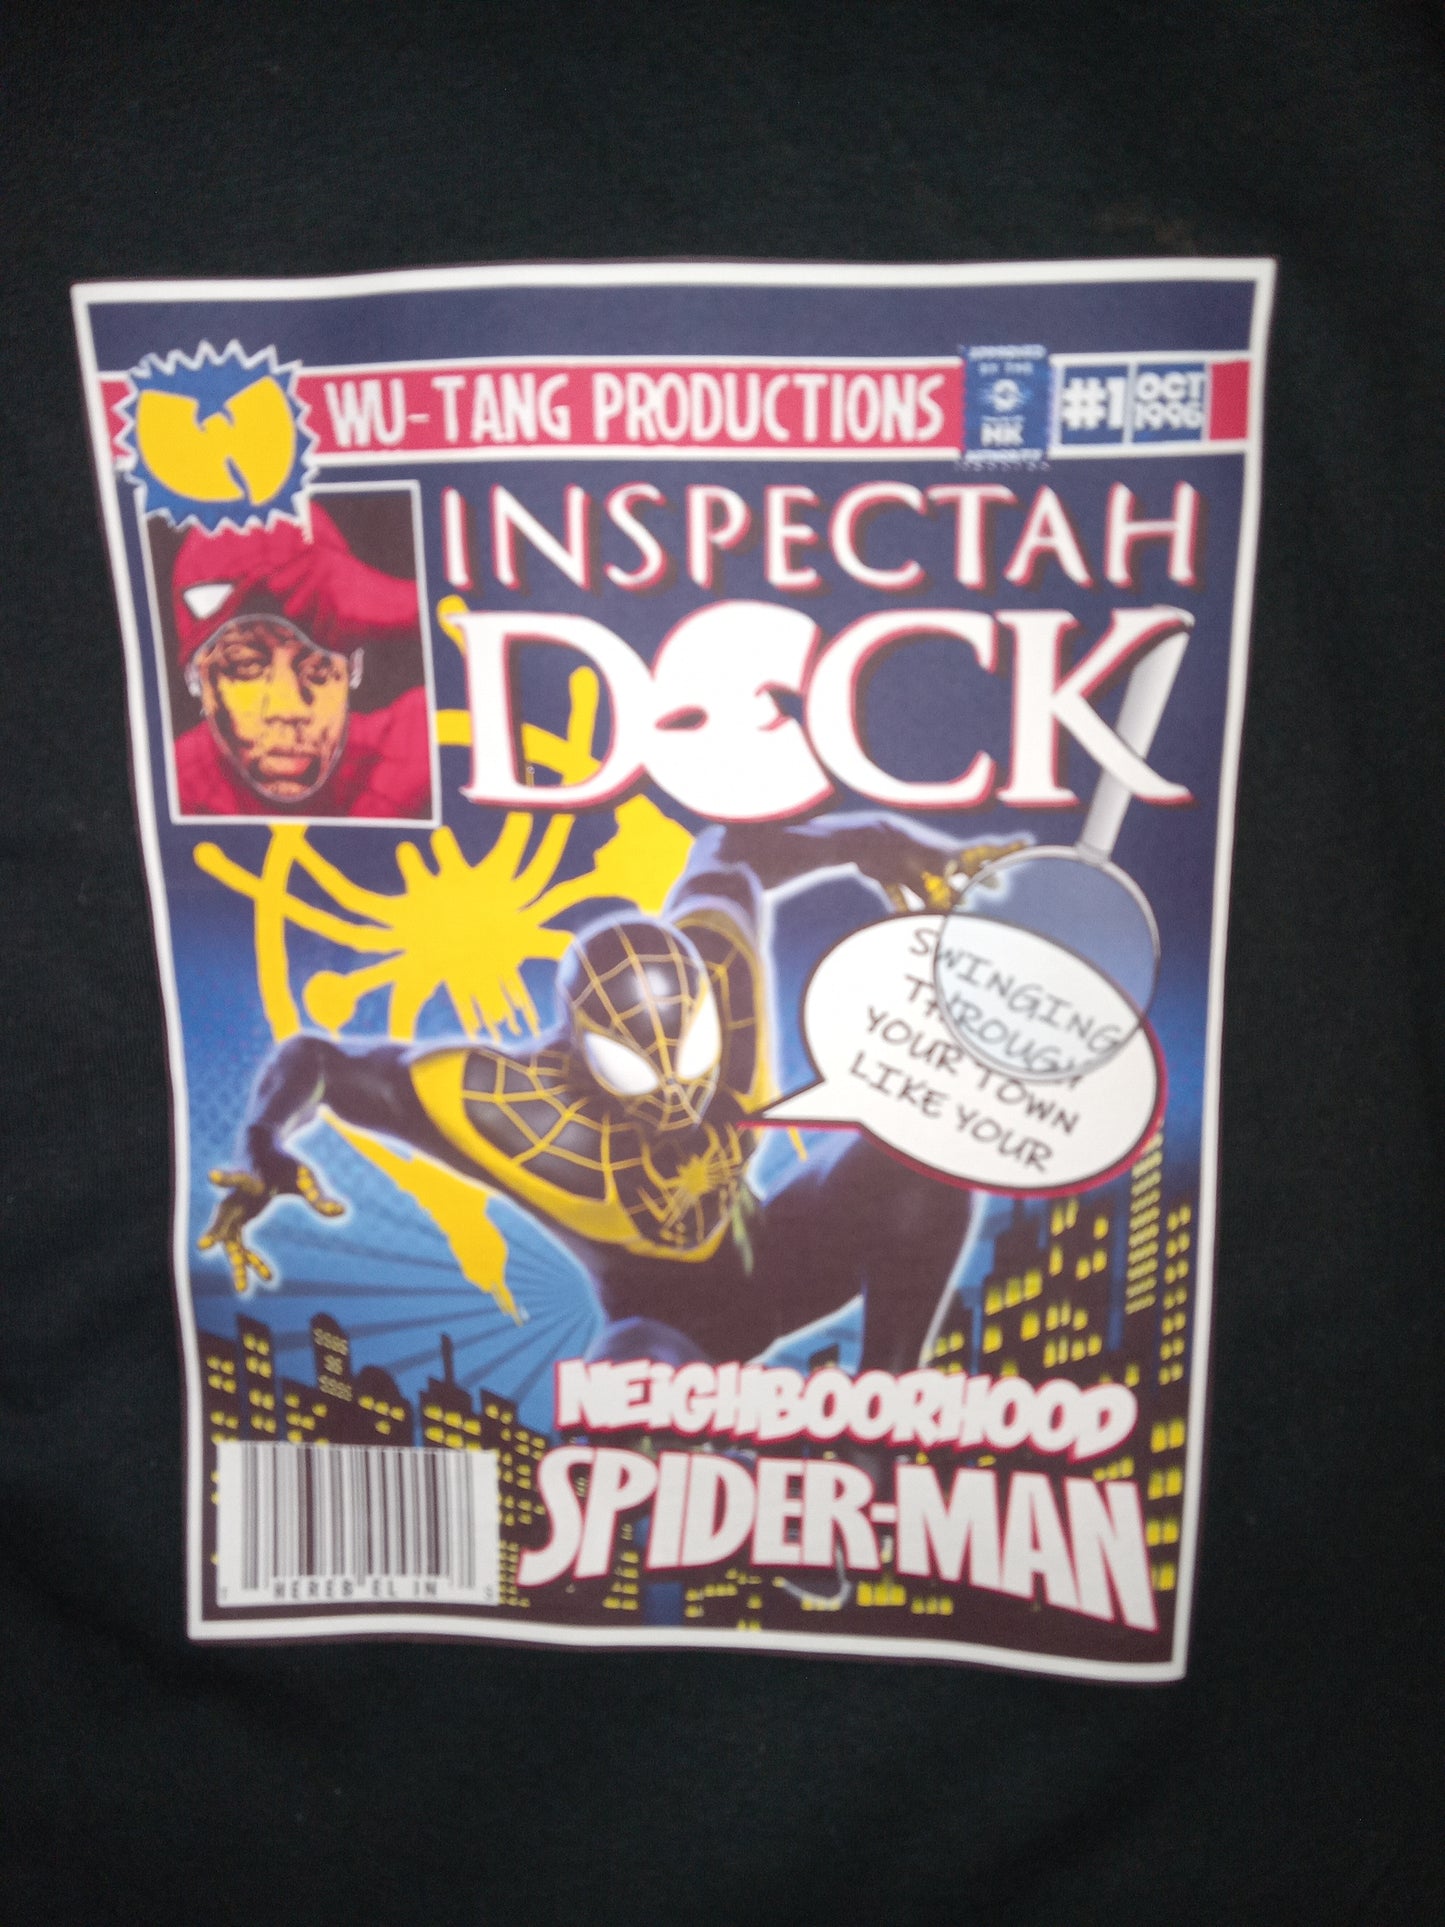 NeighboorHood Spiderman Inspectah Deck Wu Tang Inspired Comic Graphic Tee